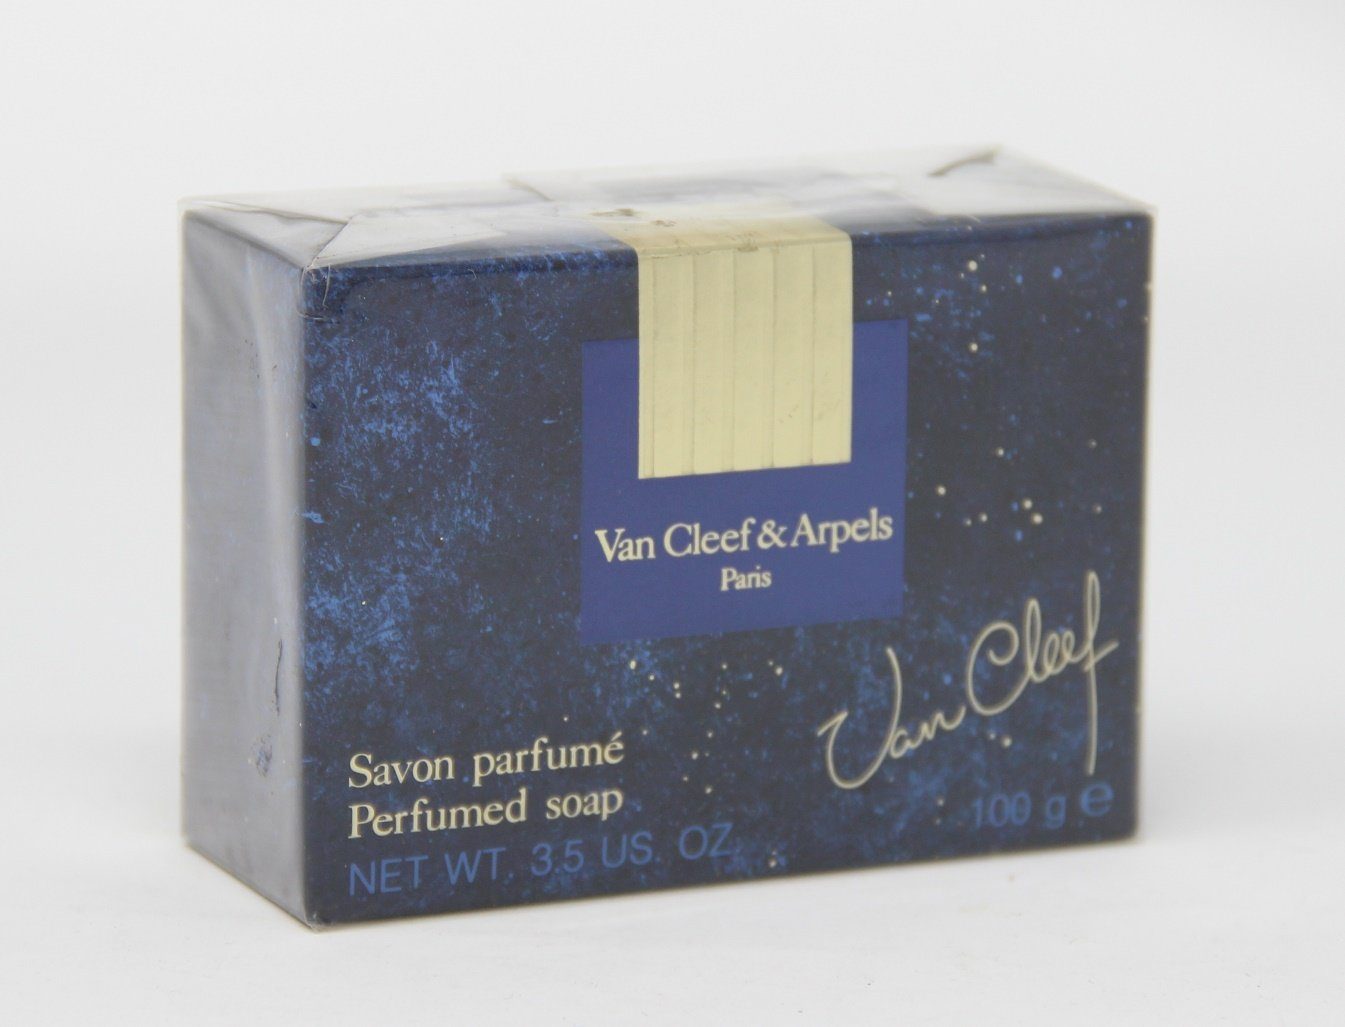 Seife Handseife Cleef Soap & Van 100g Perfumed Van Arpels Van Cleef & Cleef Arpels